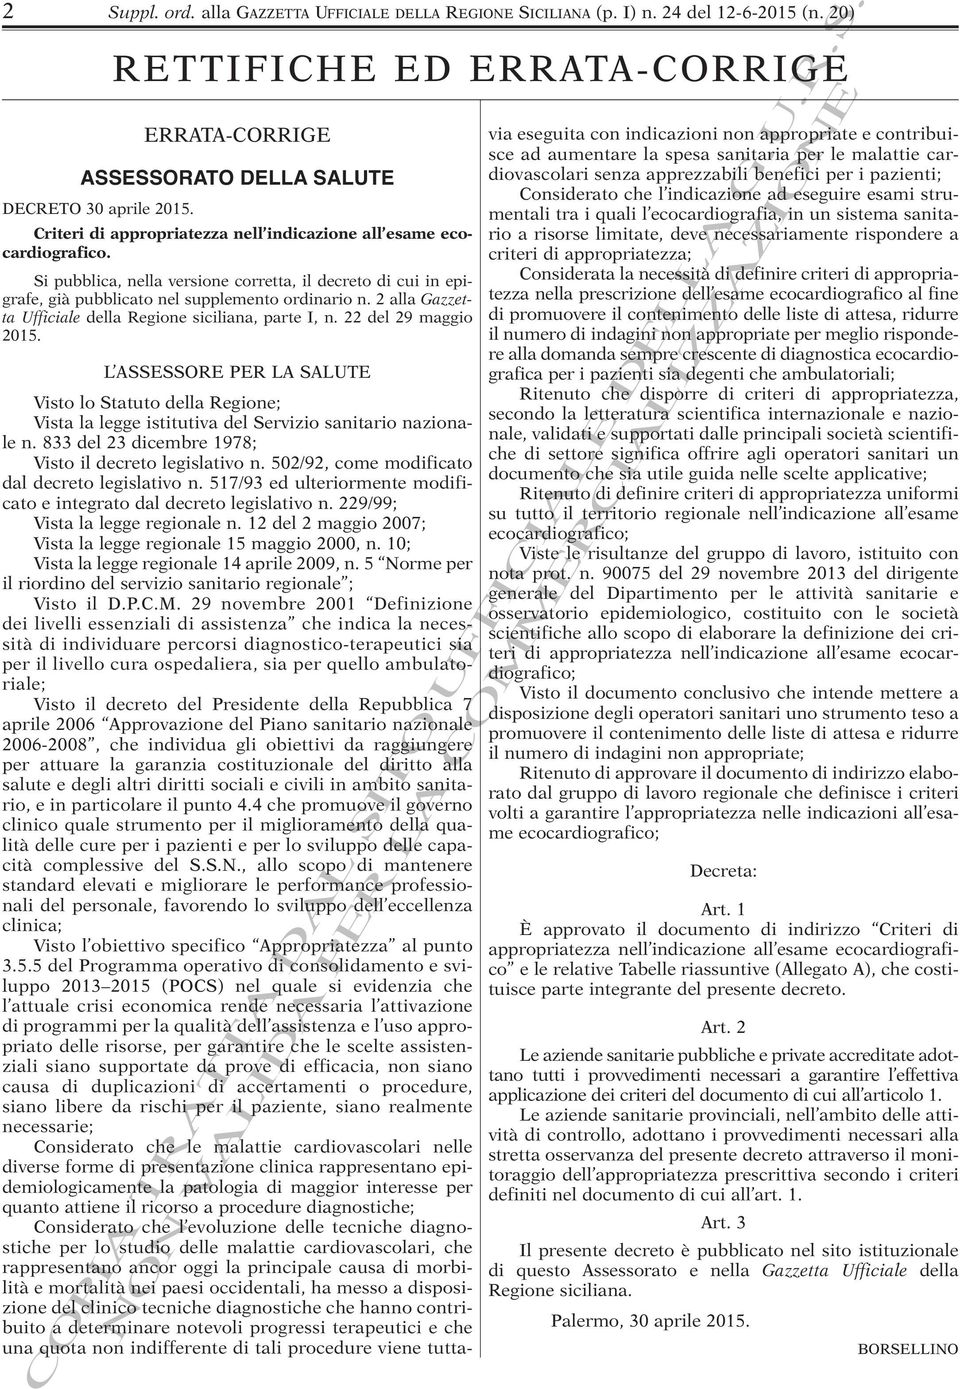 Si pubblica, nella versione corretta, il decreto di cui in epigrafe, già pubblicato nel supplemento ordinario n. 2 alla Gazzetta Ufficiale della Regione siciliana, parte I, n. 22 del 29 maggio 2015.